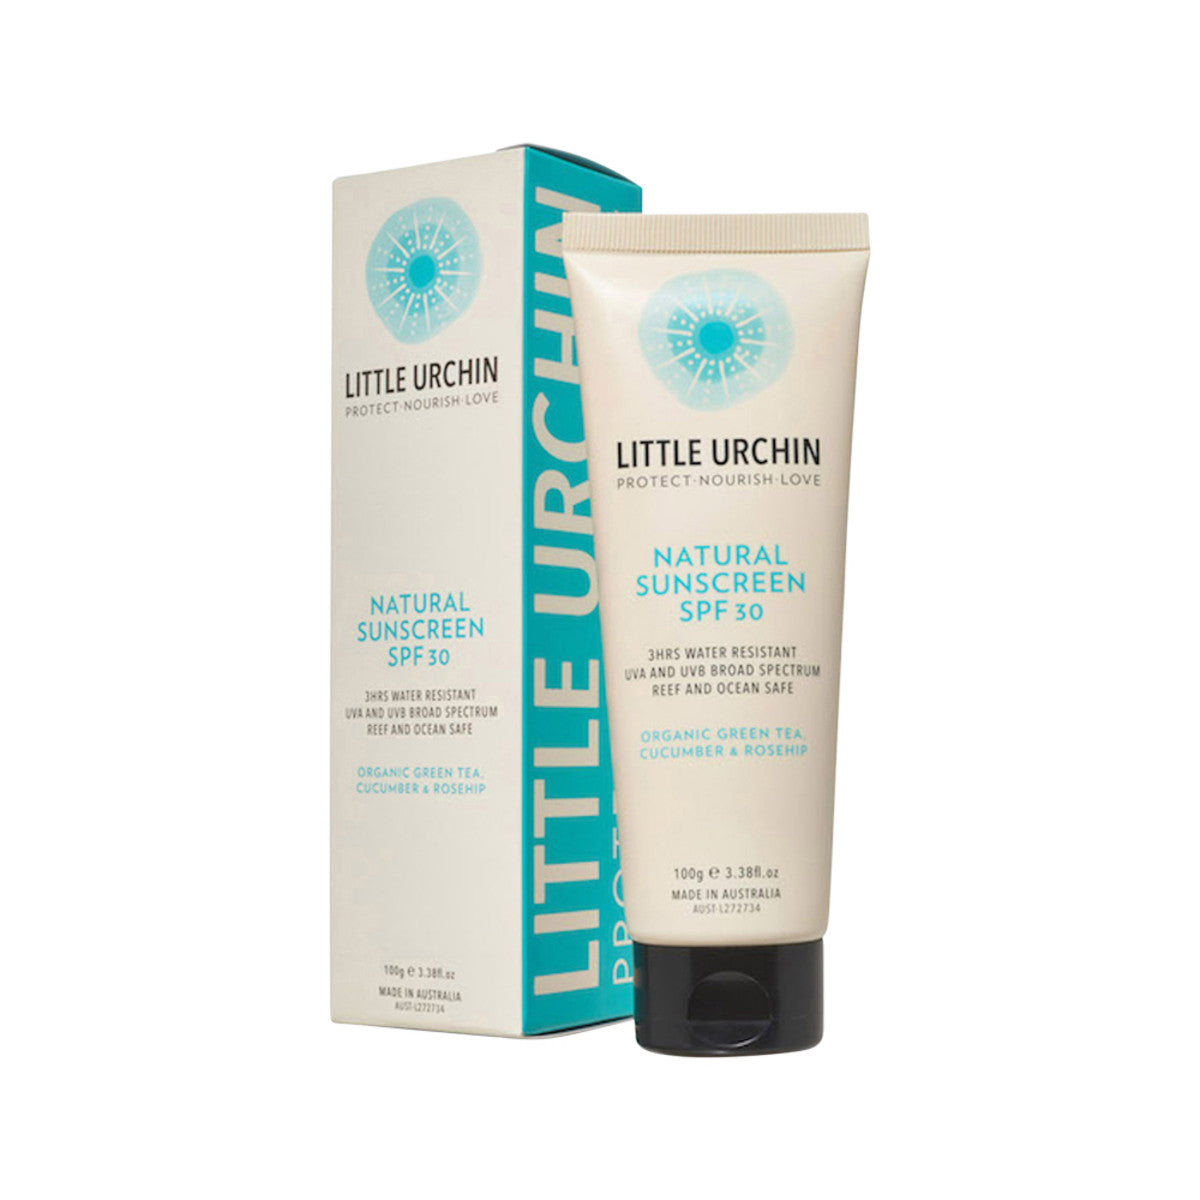 Little Urchin - Natural Sunscreen SPF 30 Plus